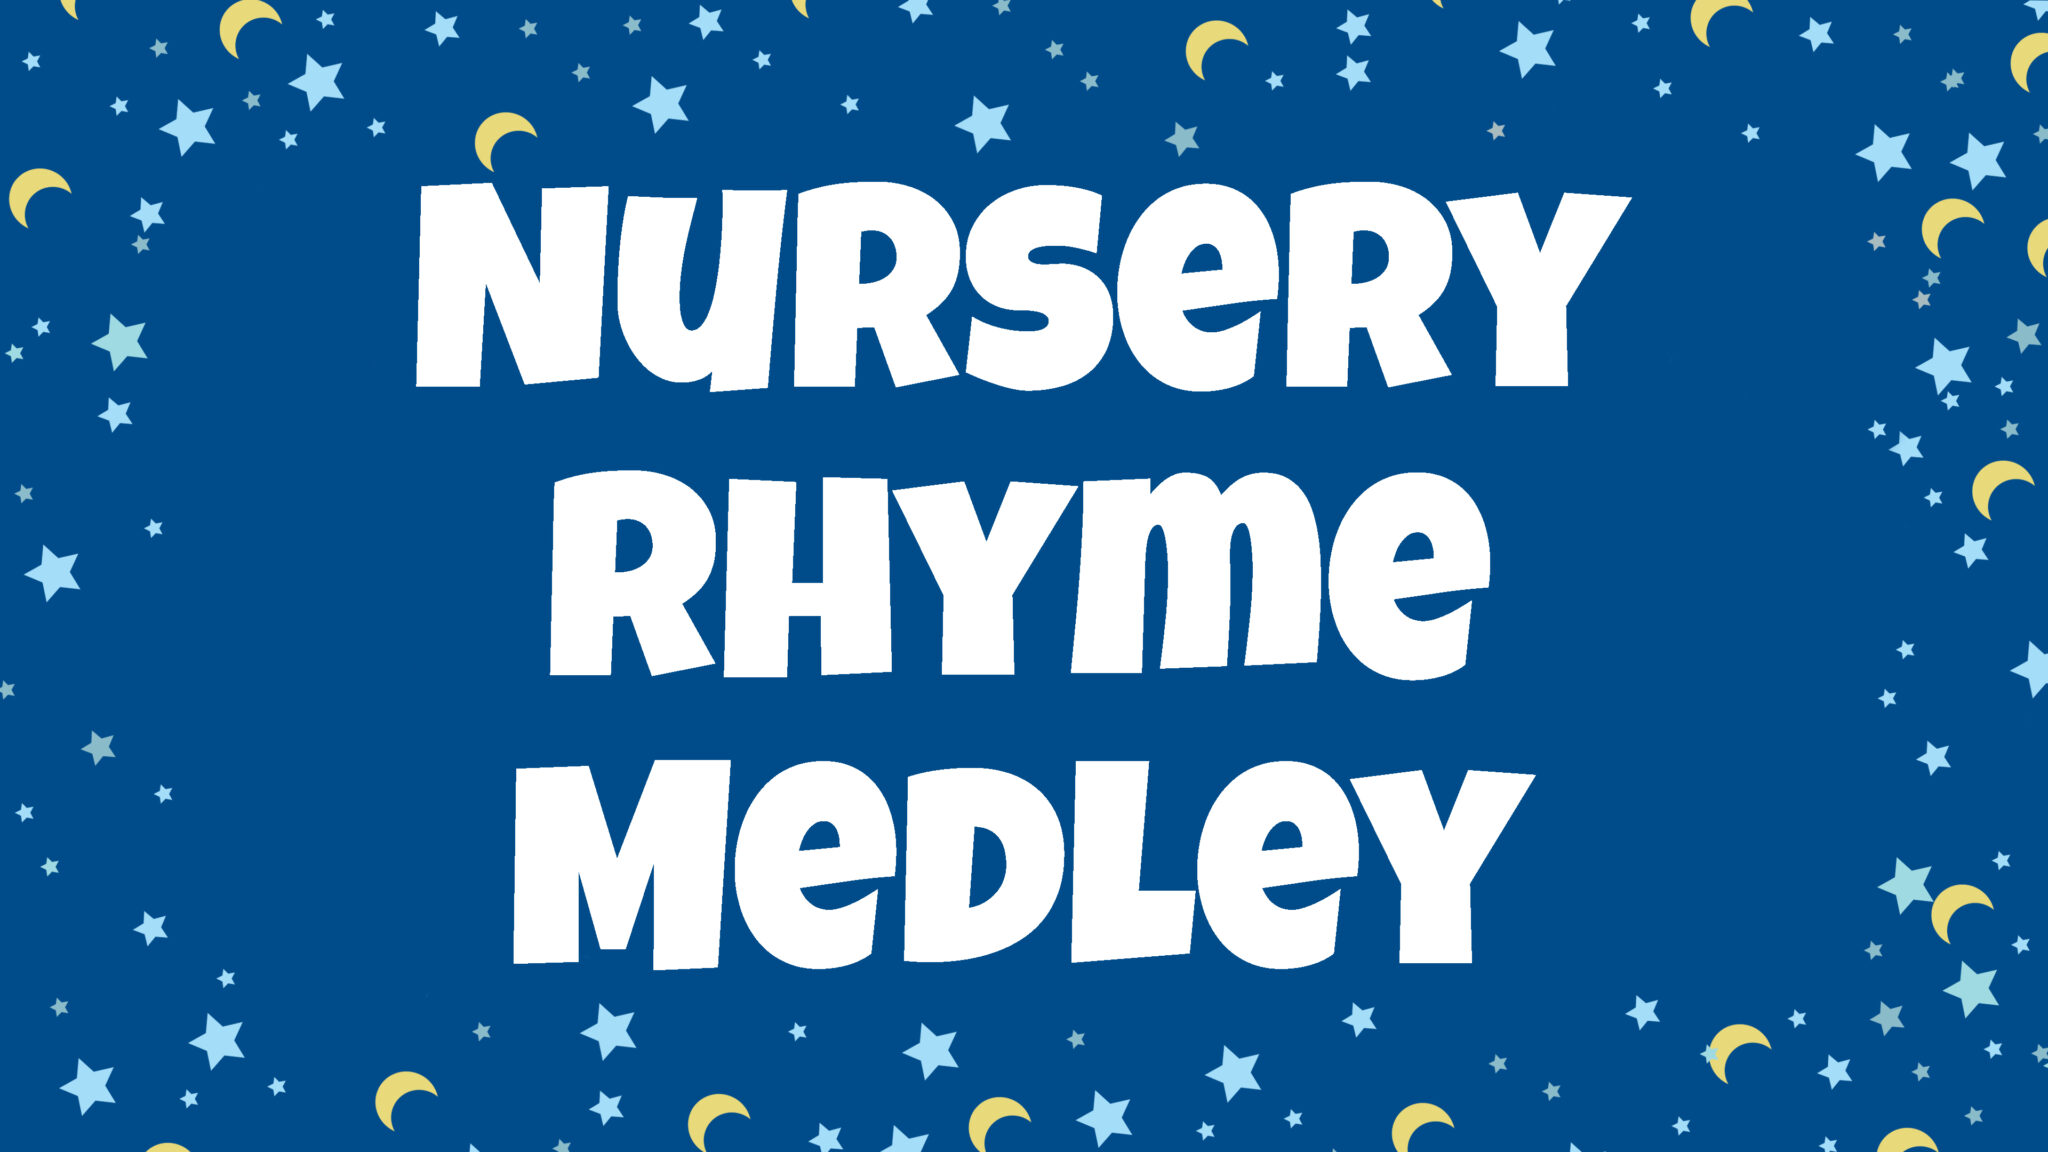 Our Nursery Rhymes Videos!